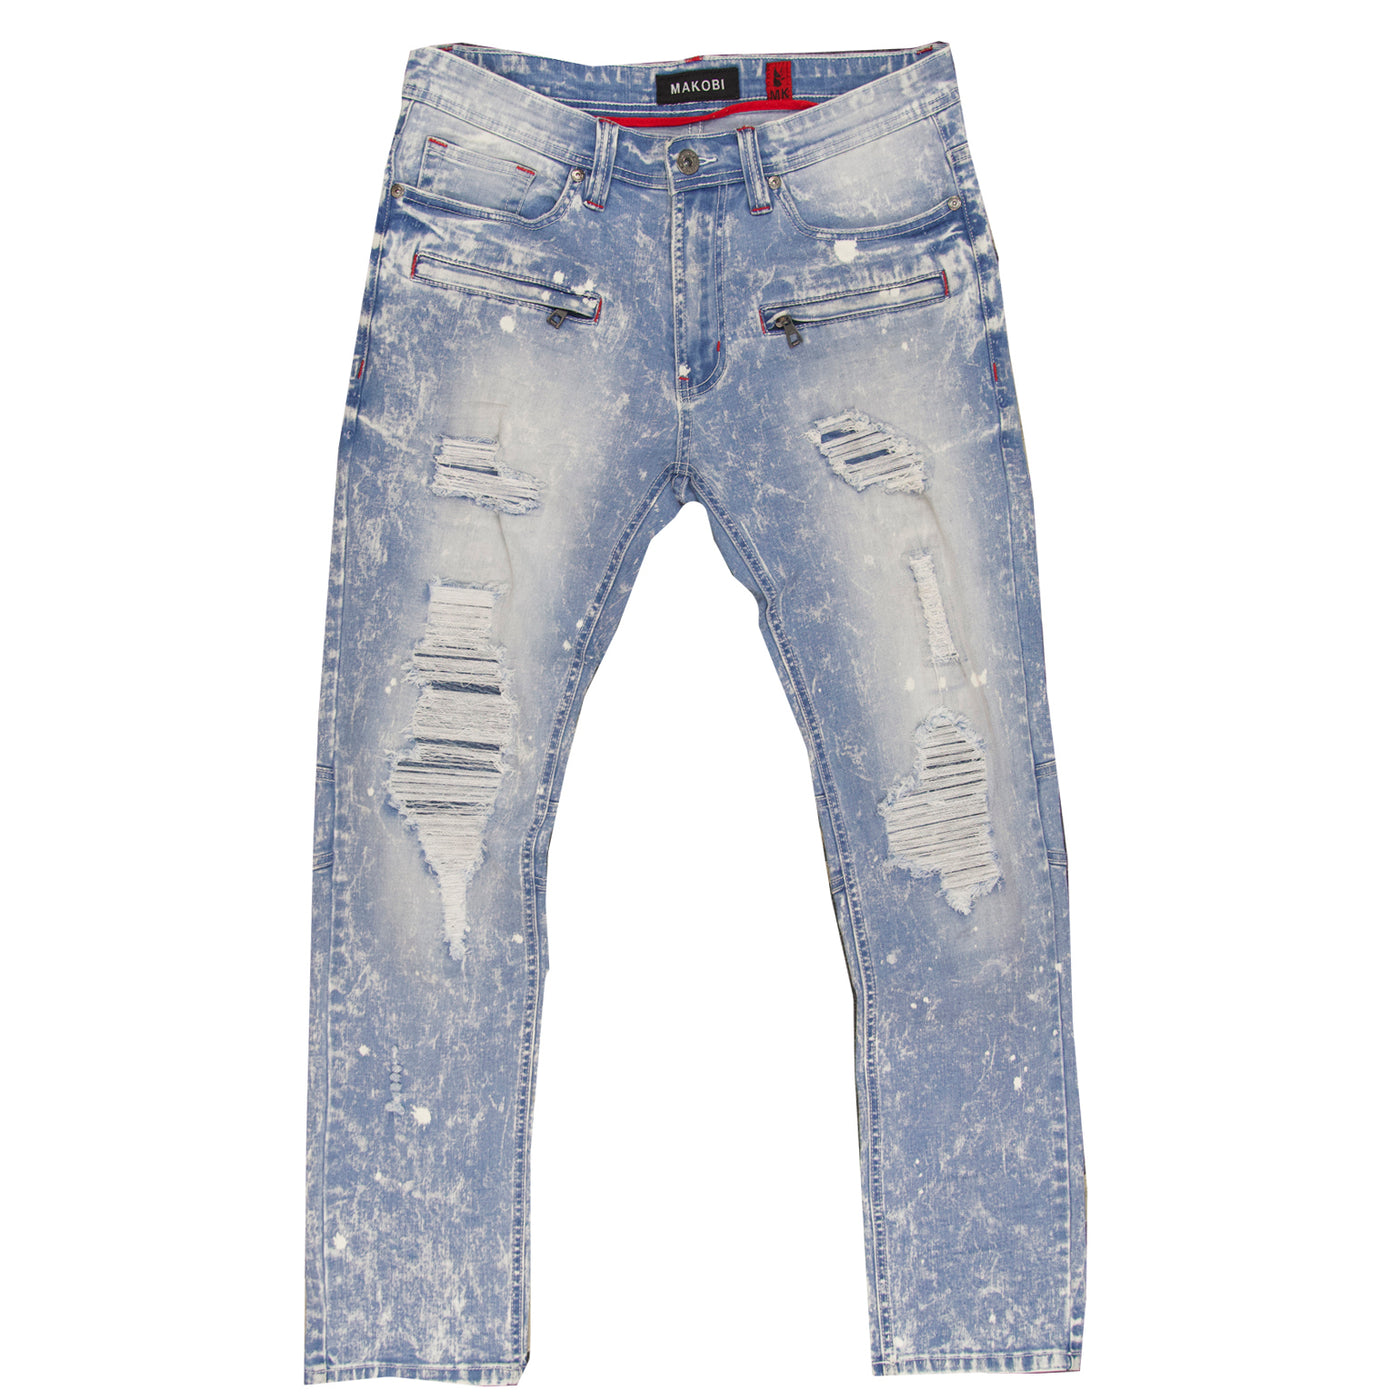 M1771 Makobi Petani Shredded Jeans Pẹlu Bleach Spots - Light Wẹ